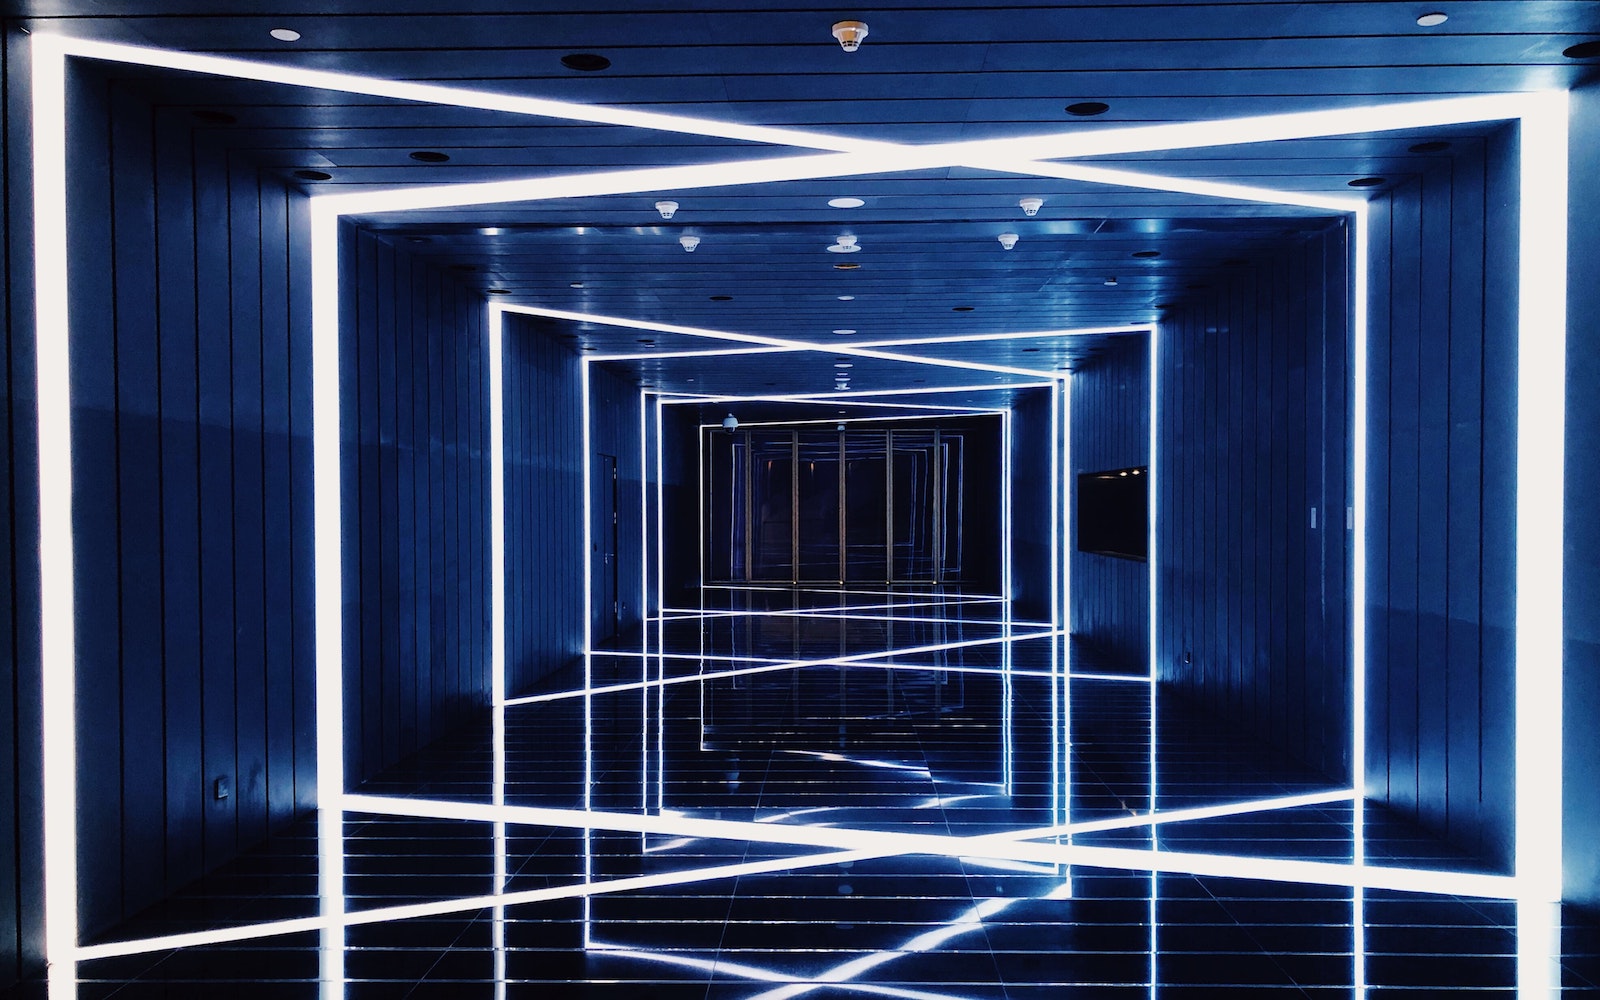 A corridor full of LED lighting